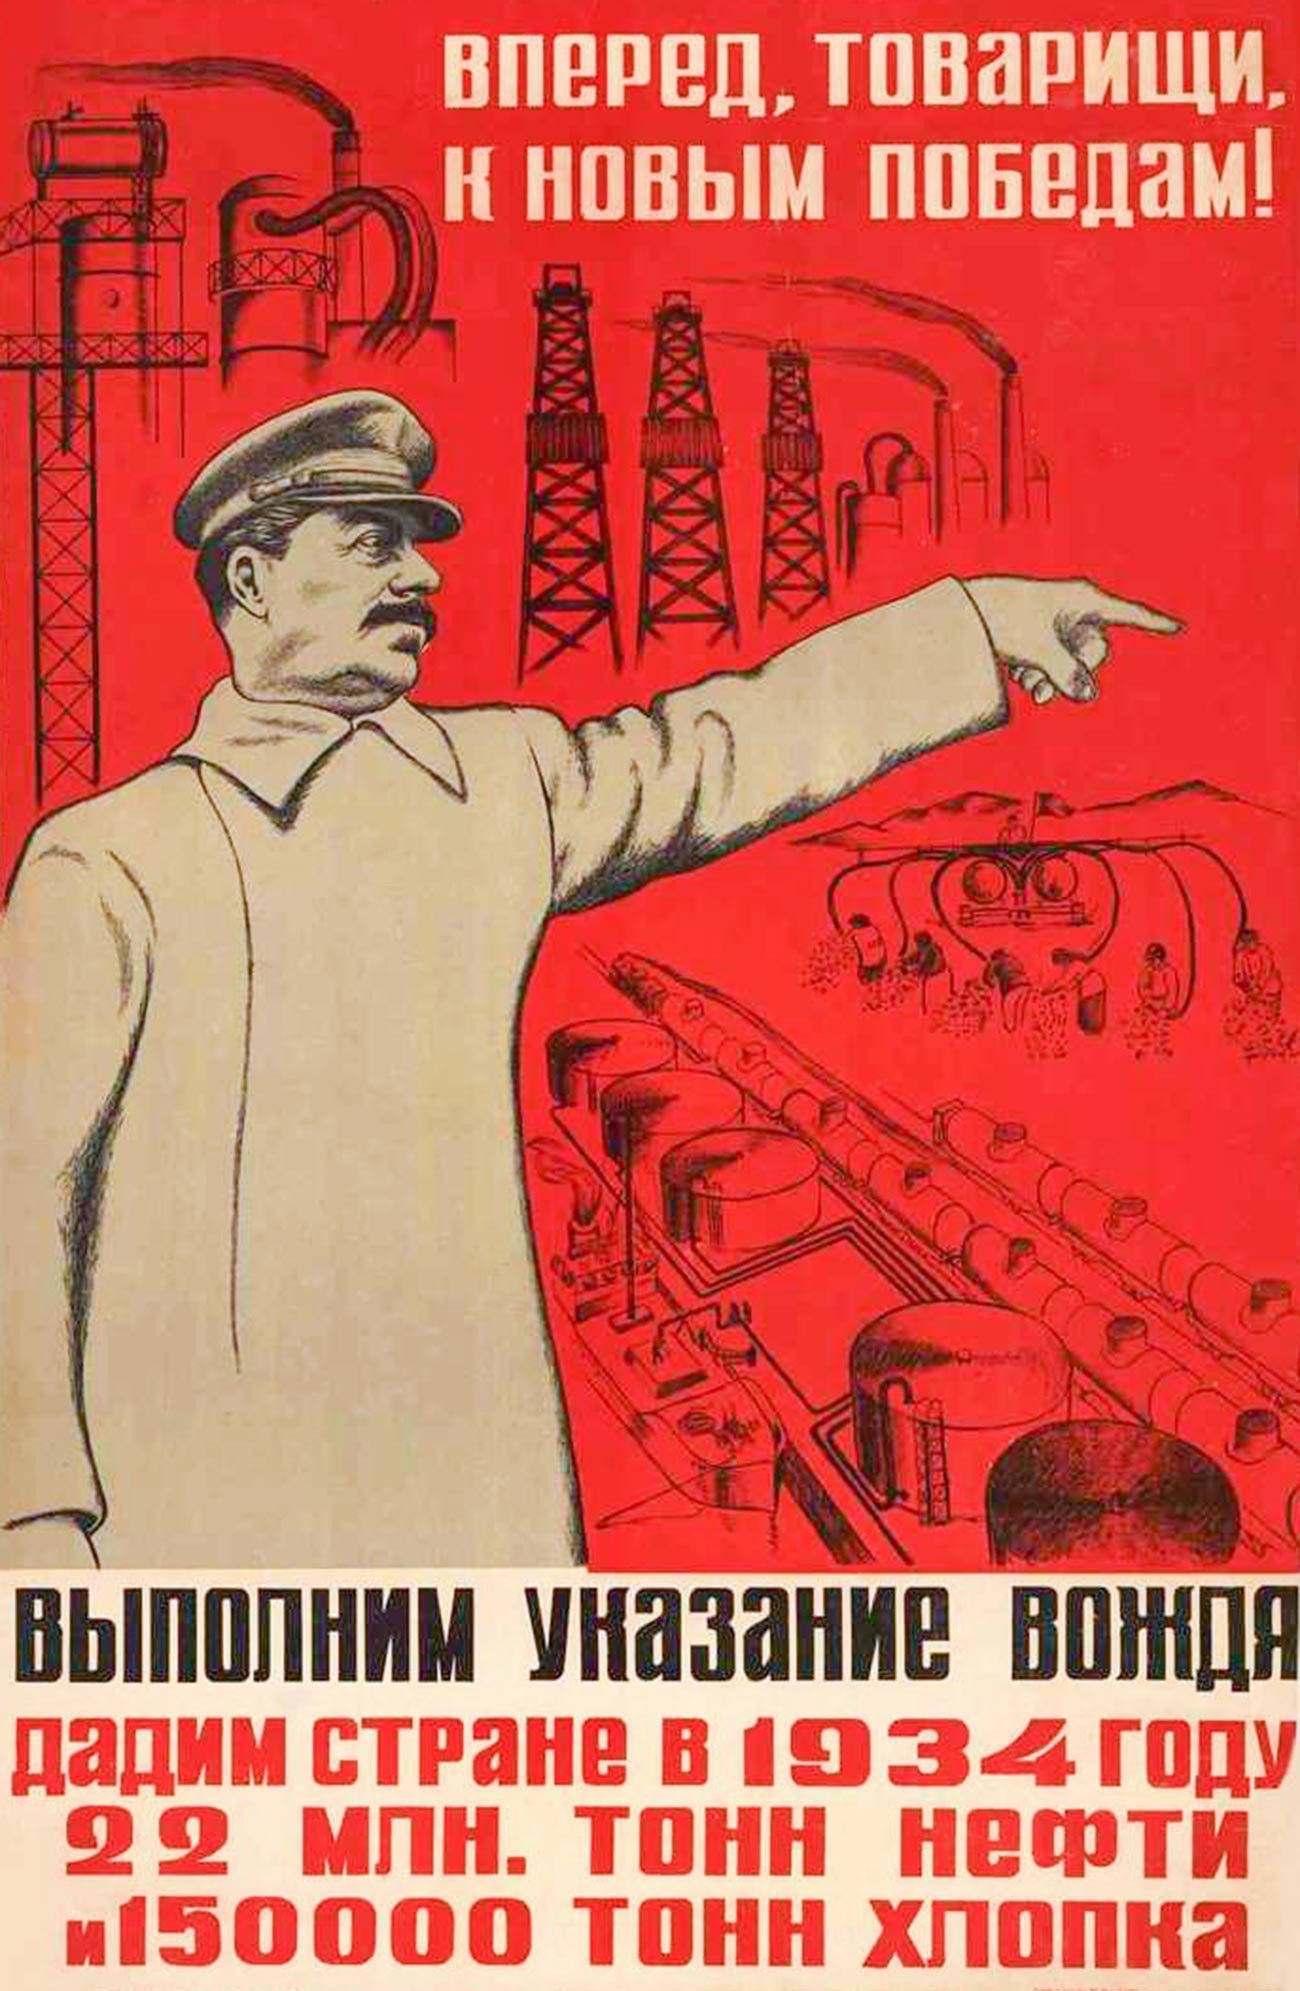 Affiche « En avant, camarades, vers de nouvelles victoires ! », années 1930